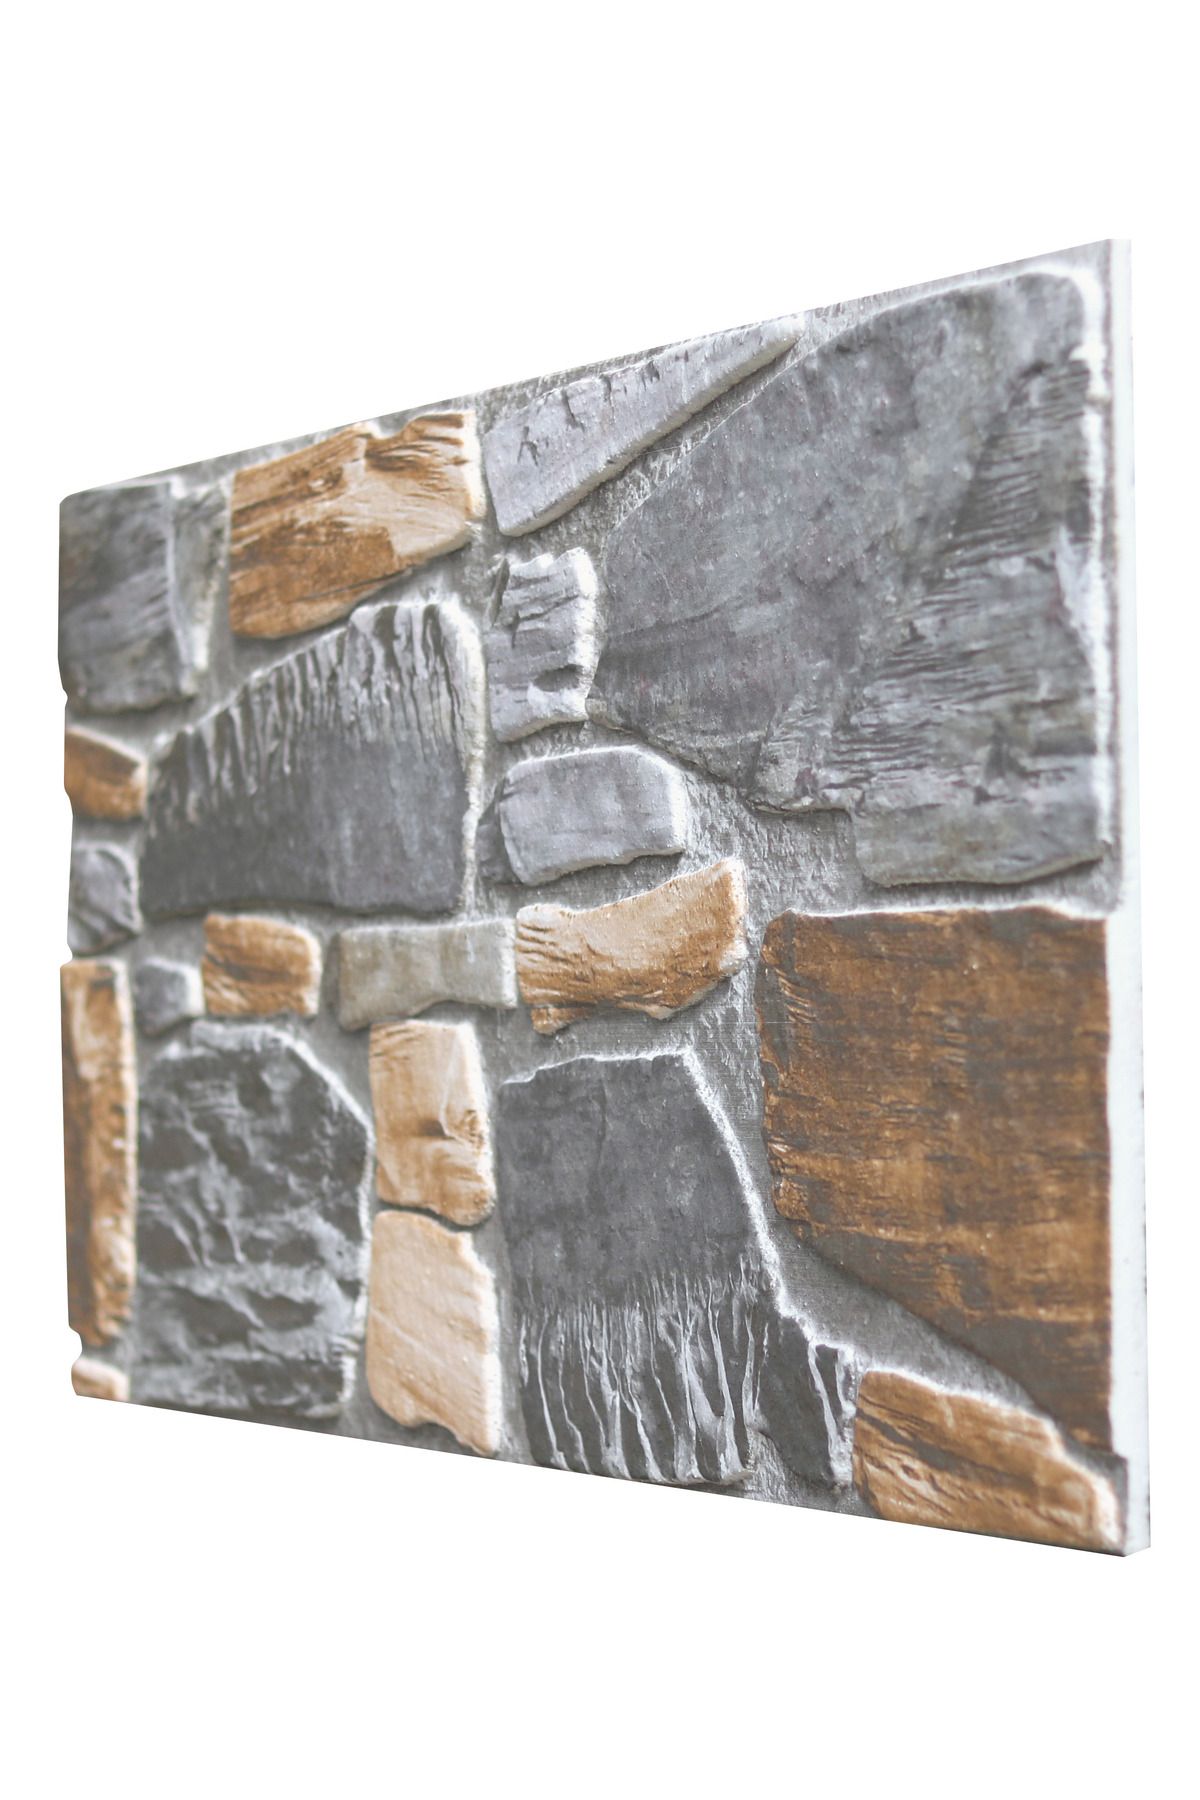 Stikwall Tarla Taşı Dokulu Dekoratif Strafor Duvar Kaplama Paneli 685-203 - 50x120 Cm (5 ADET-3M2)